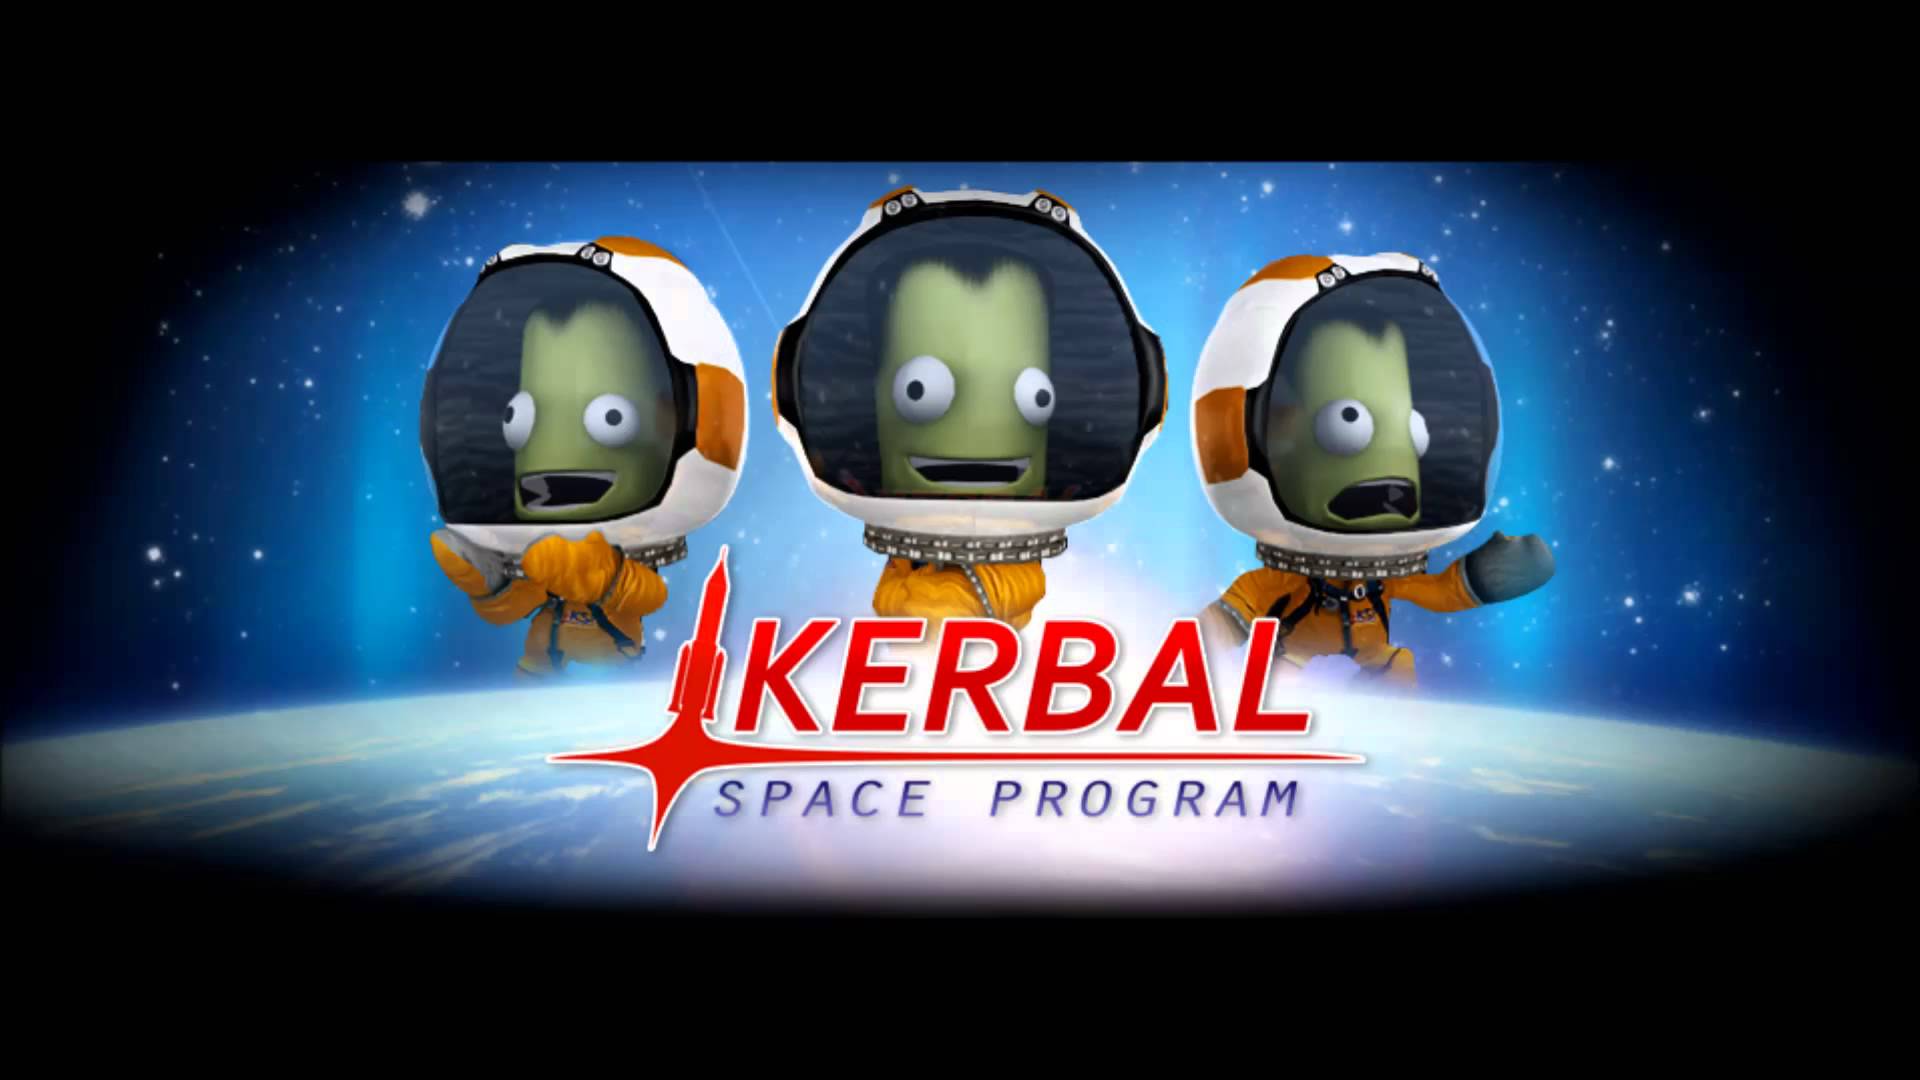 Kerbal Space Program Wallpapers